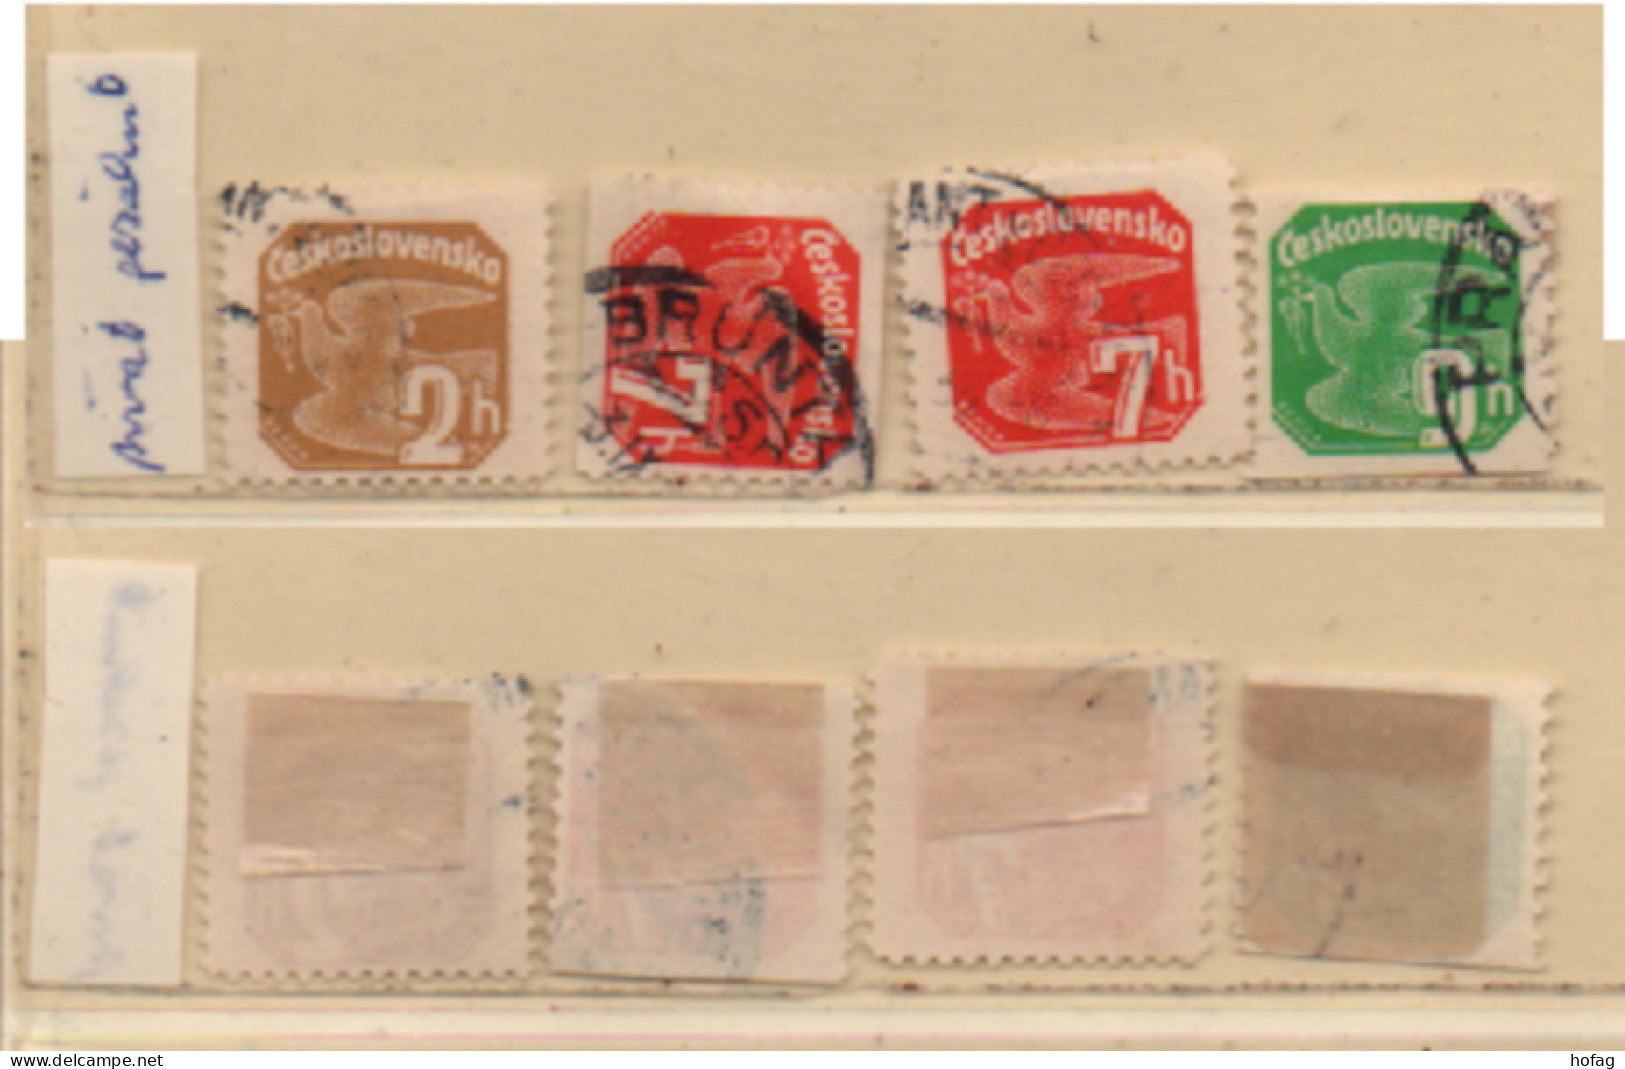 Tschechoslowakei 1937 MiNr.: 364, 366, 367 Zeitungsmarken Gezähnt, Gestempelt Chechoslovakia Used Perforated - Newspaper Stamps